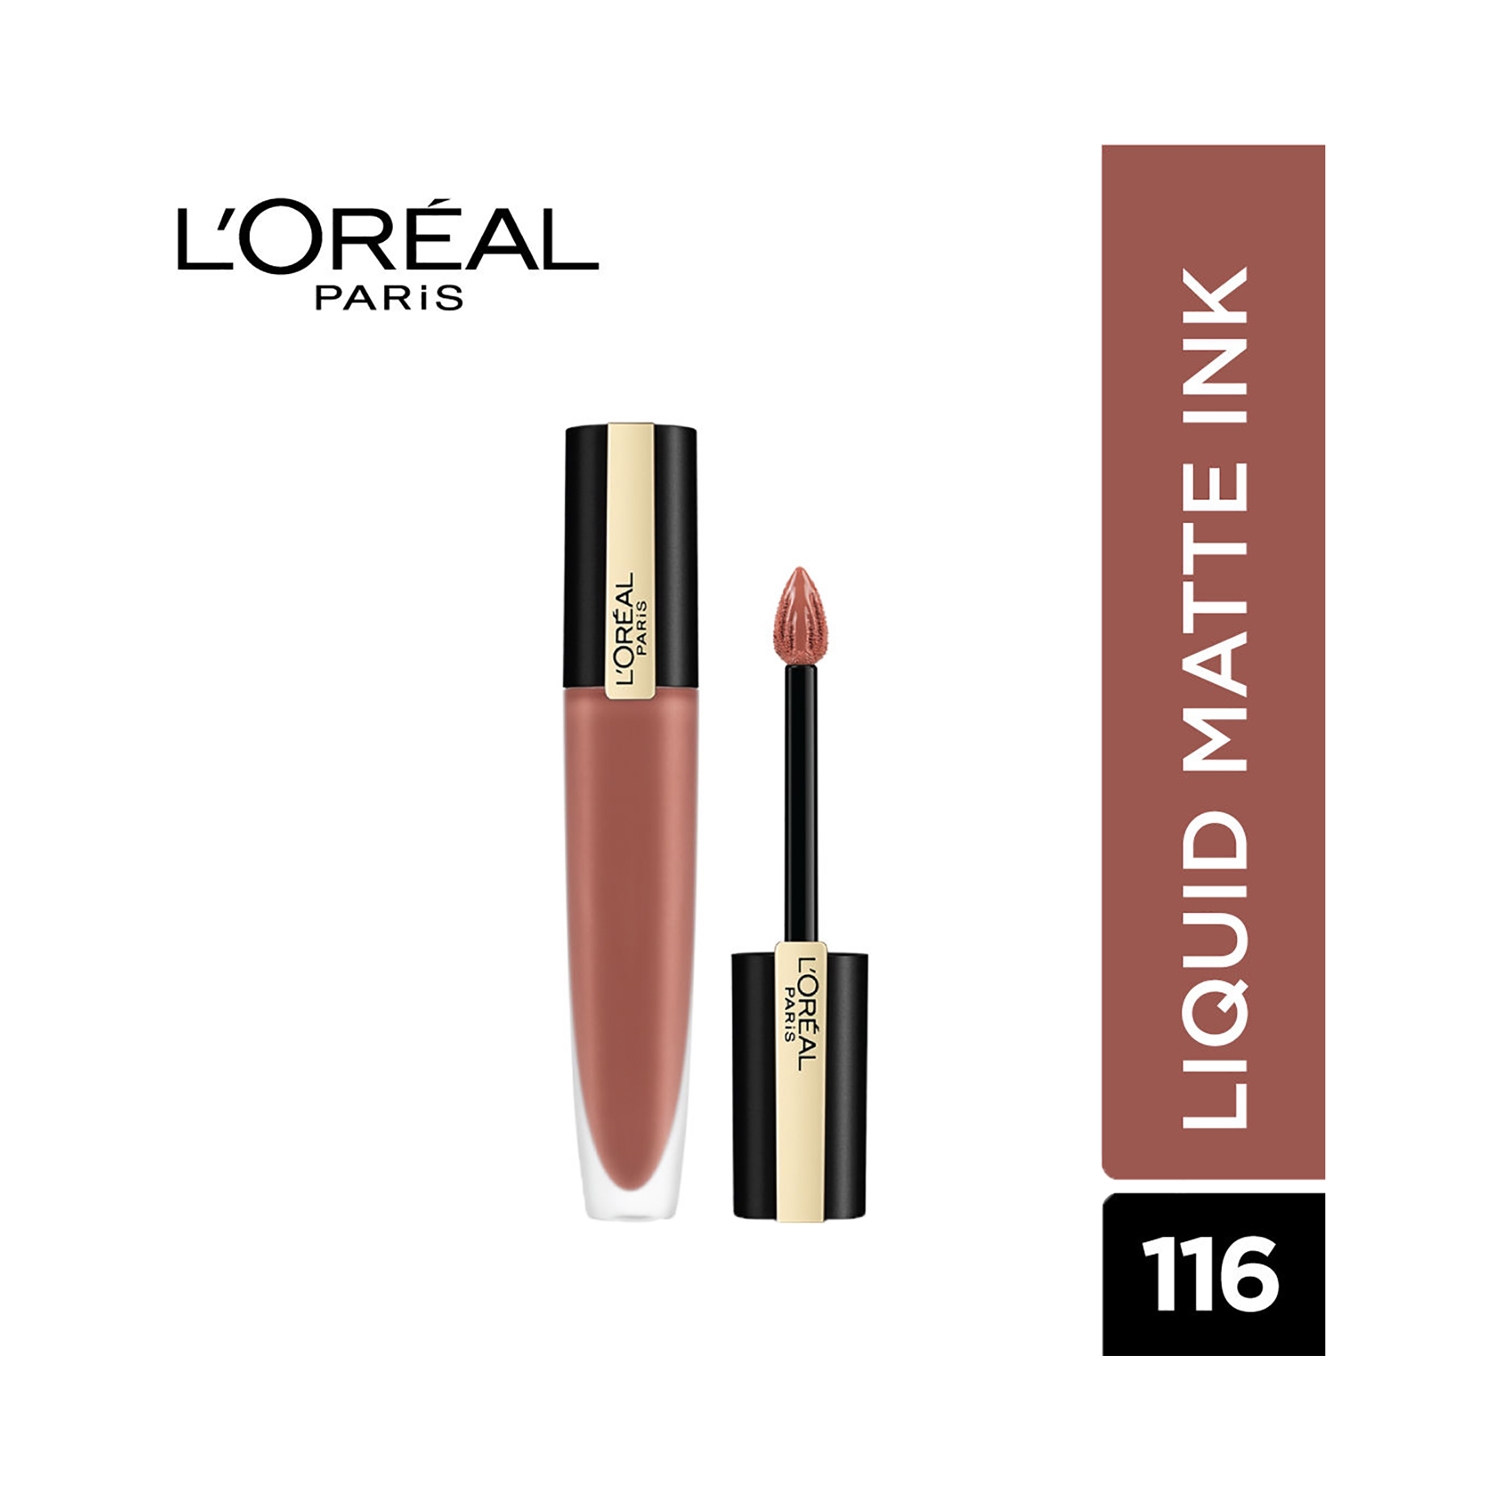 L'Oreal Paris | L'Oreal Paris Rouge Signature Matte Liquid Lipstick - 116 I Explore (7 g)